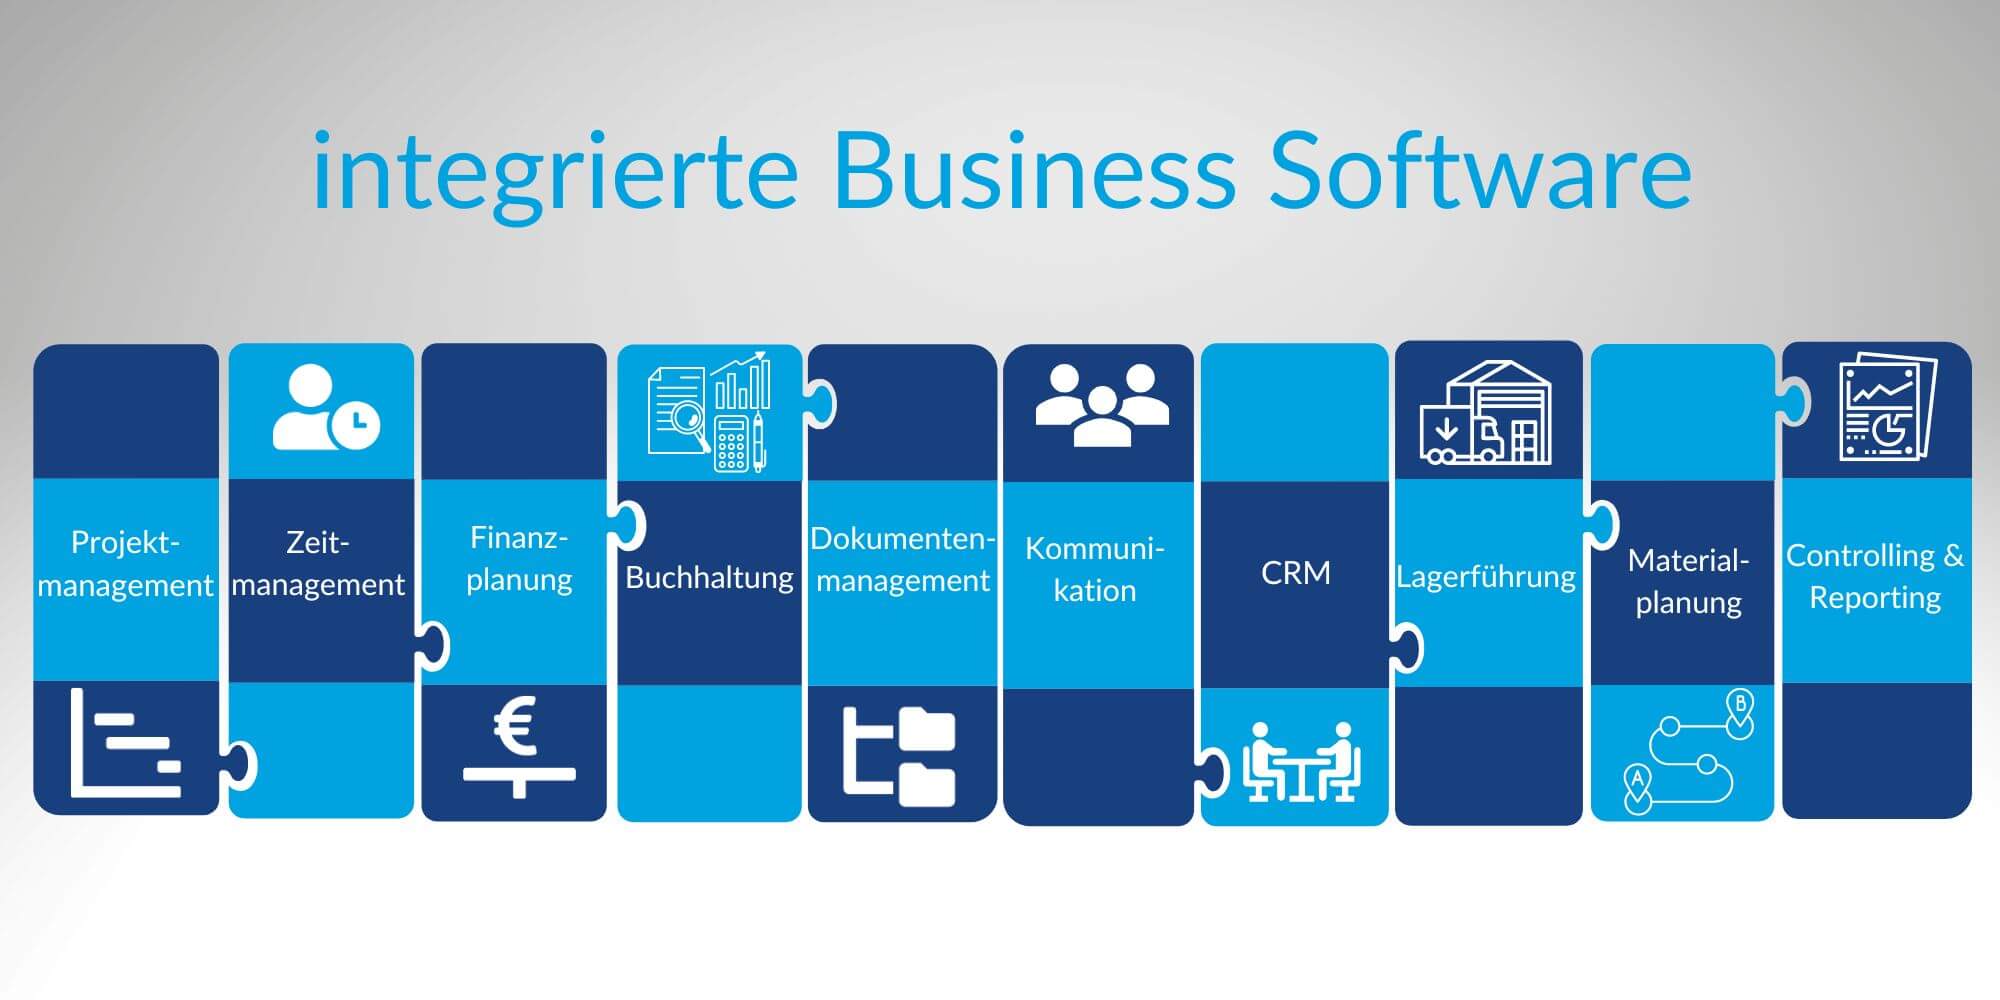 Business Software in vielen Unternehmensbereichen